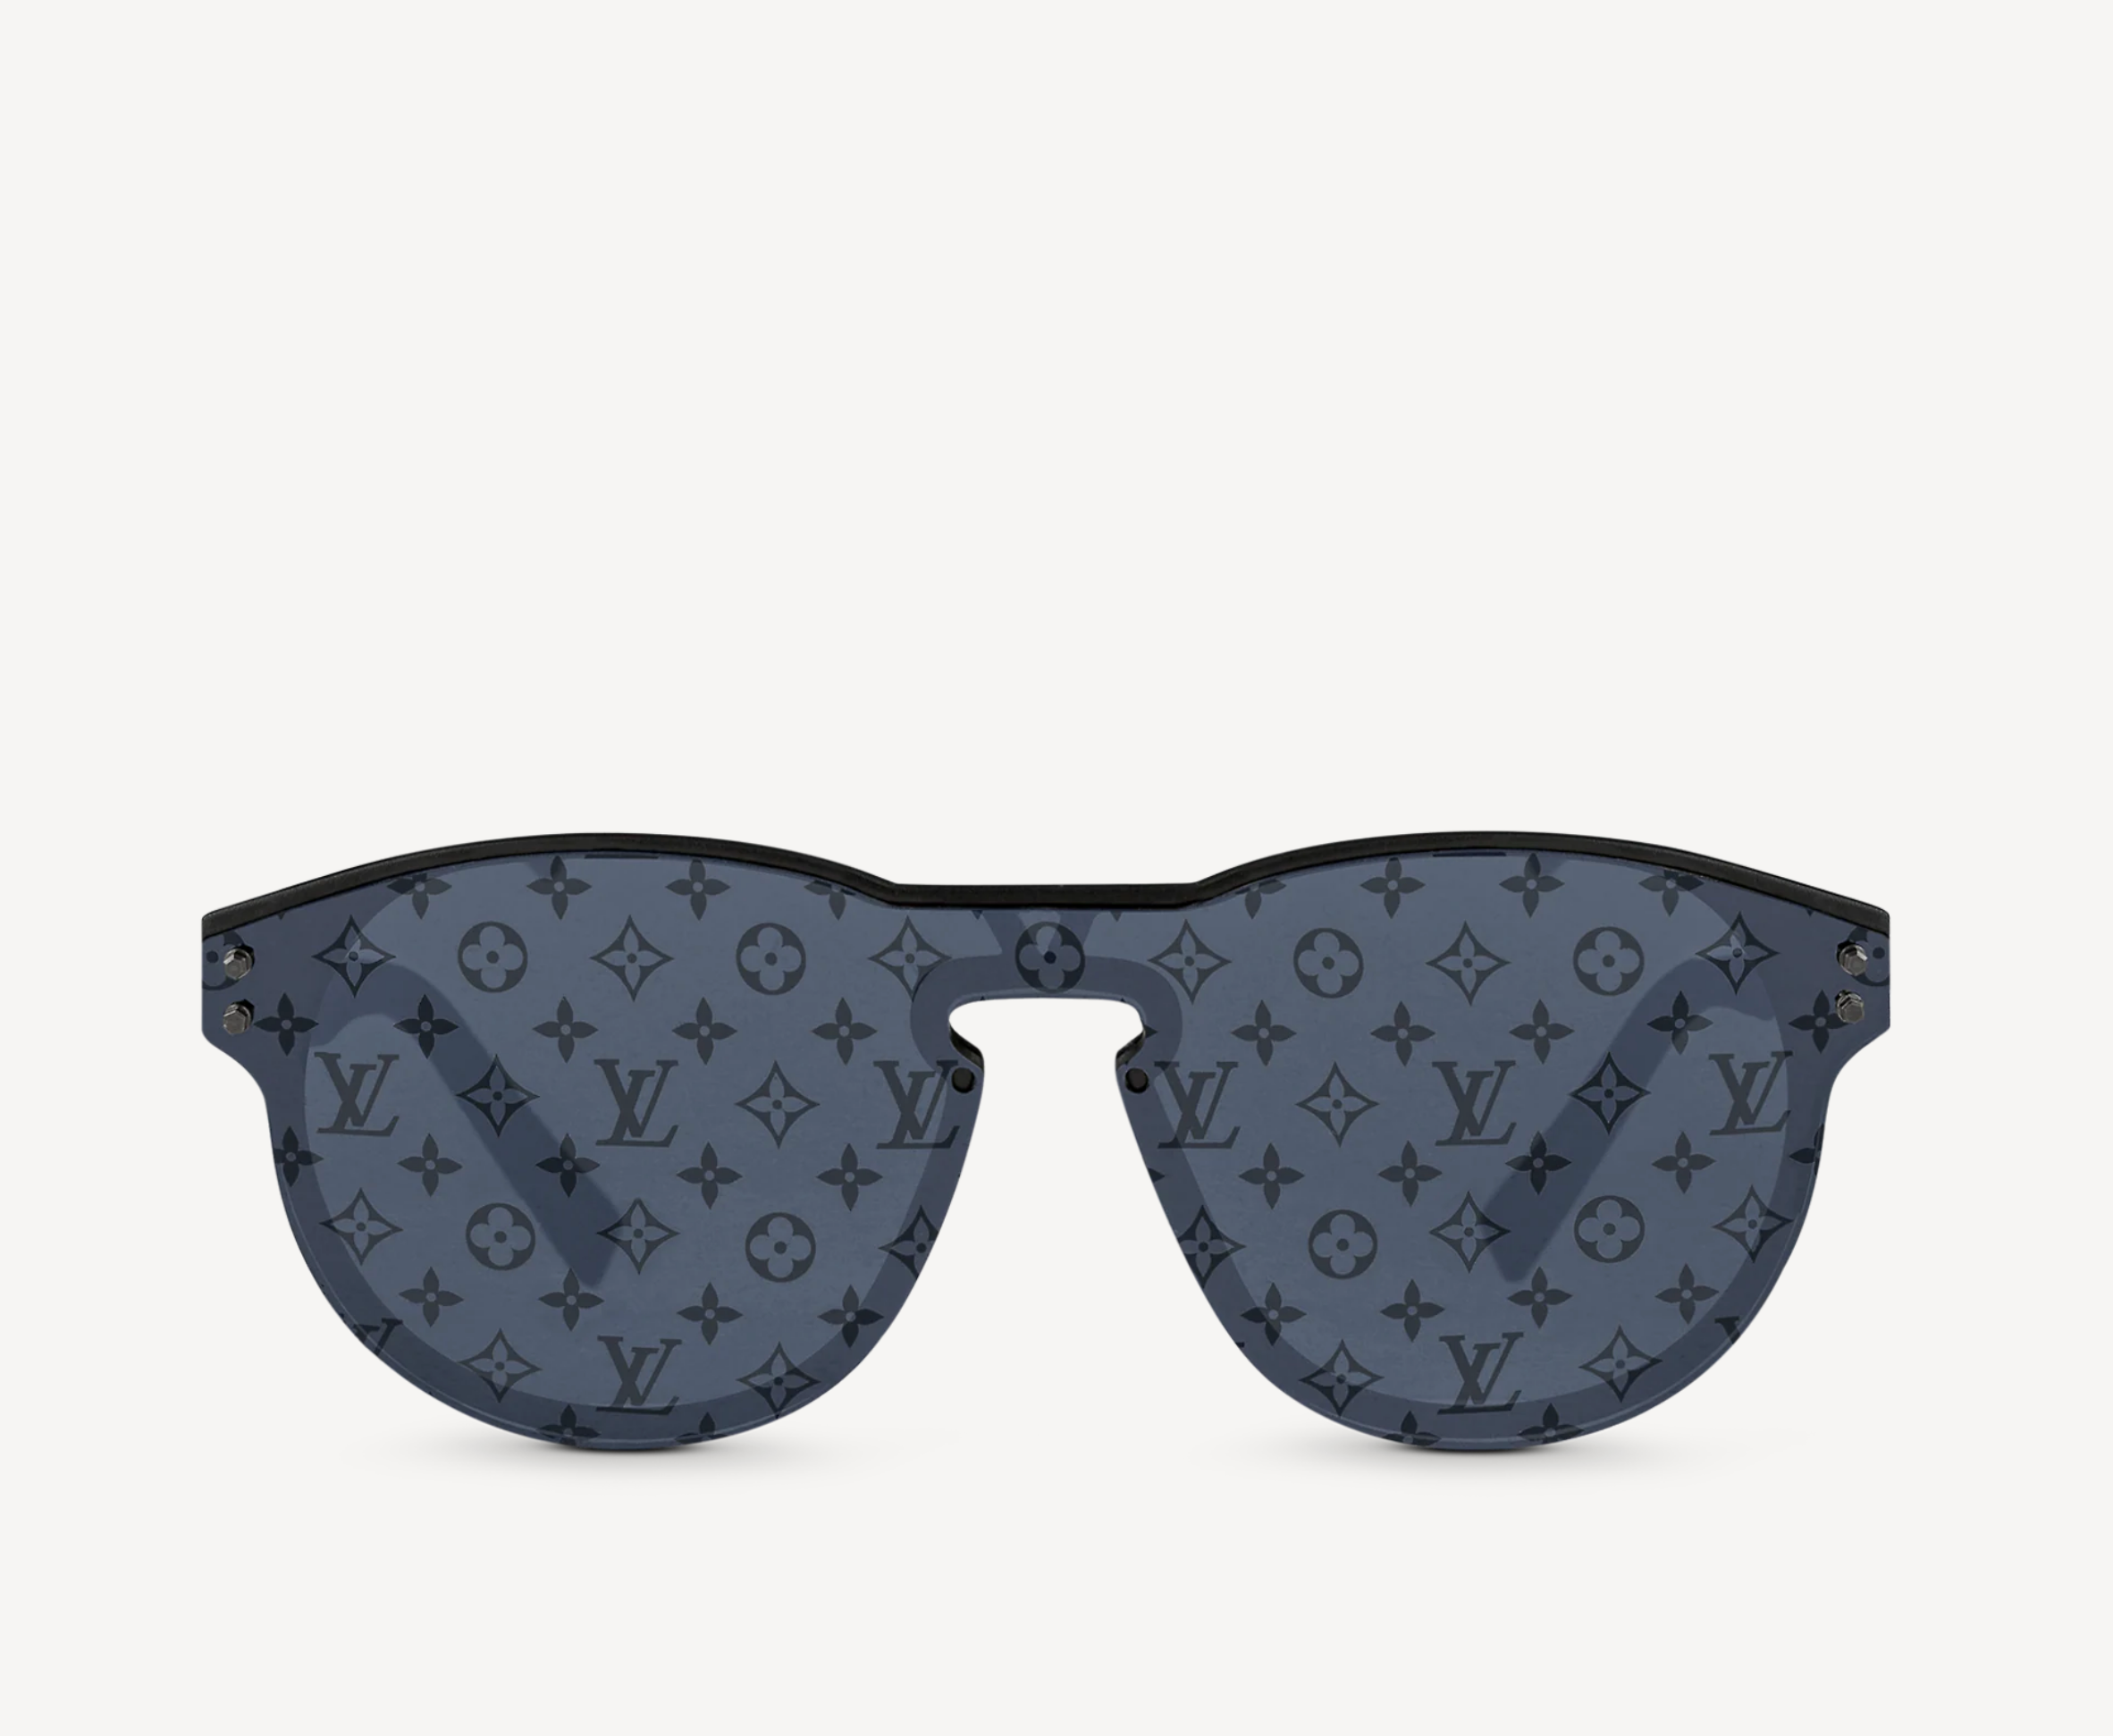 Louis Vuitton LV Signature Round Sunglasses